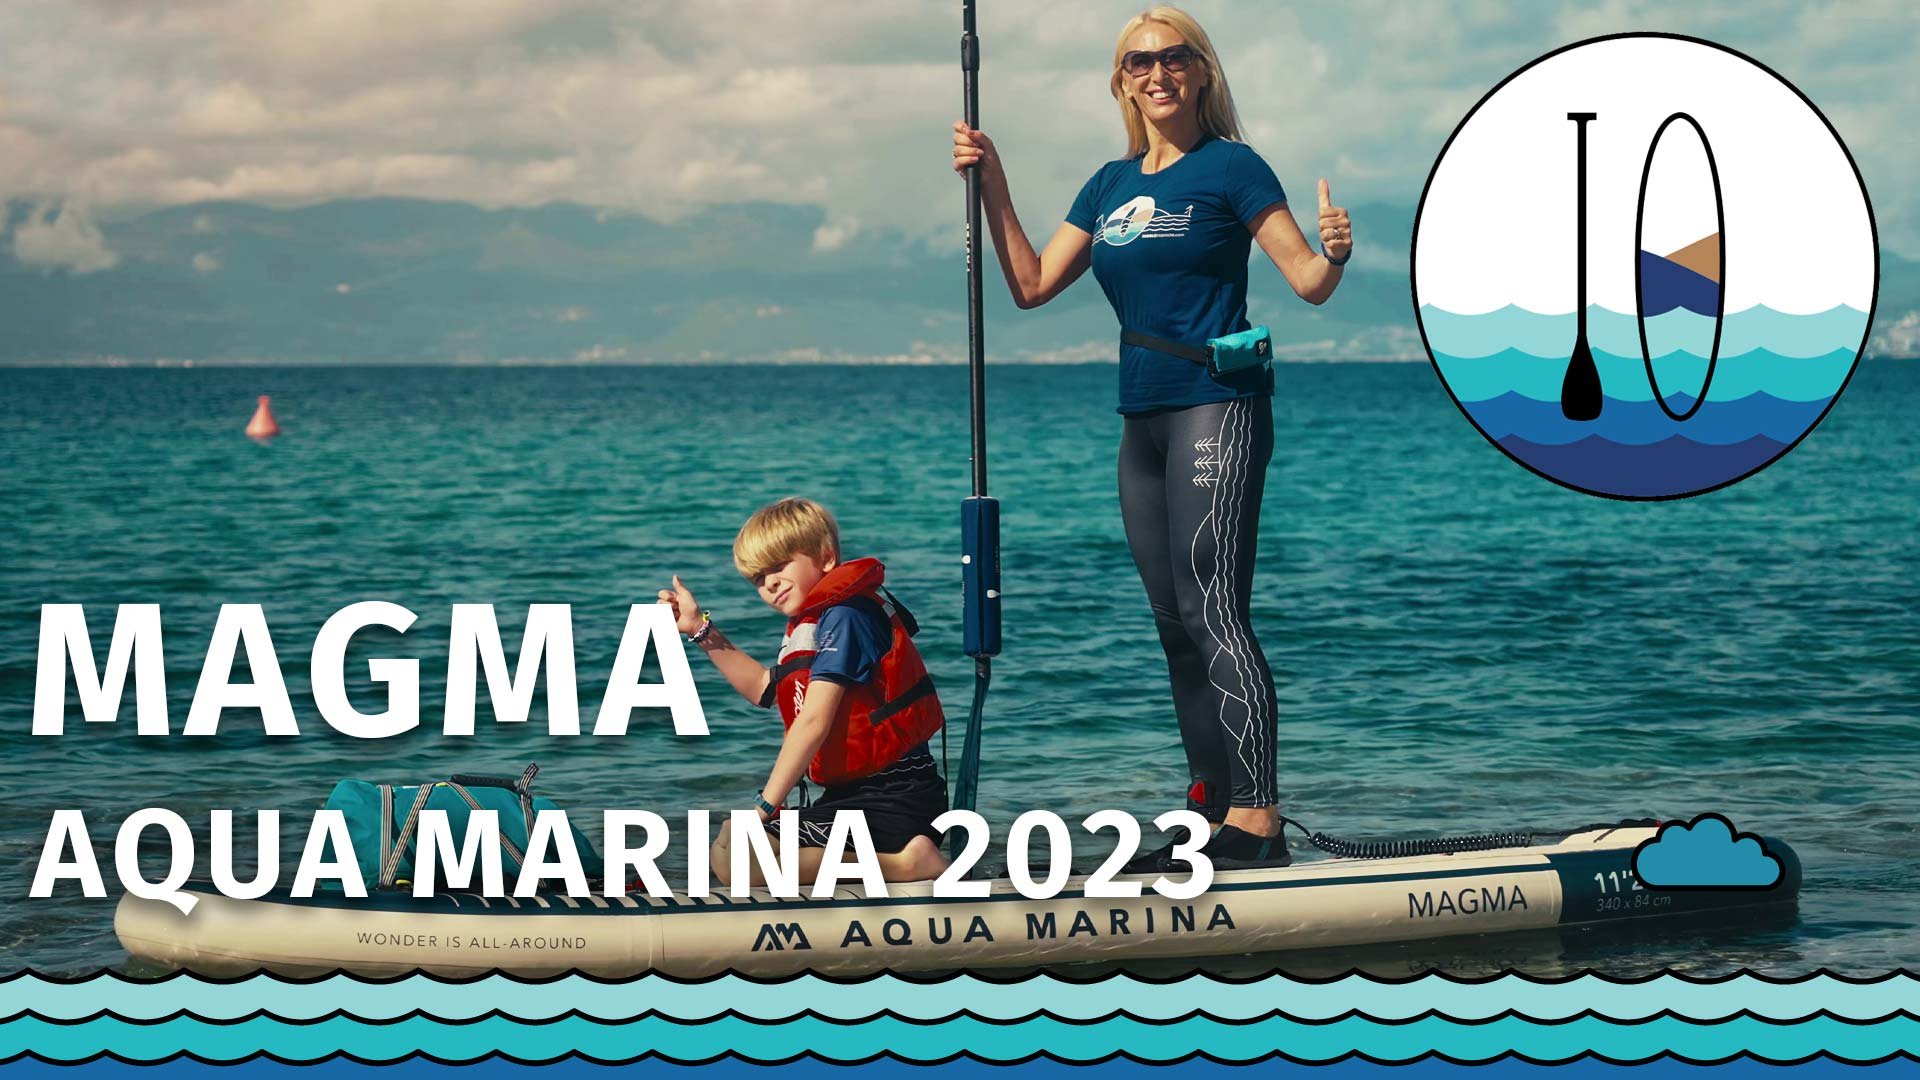 AQUA MARINA MAGMA 2023 - Produktvorstellung und Test